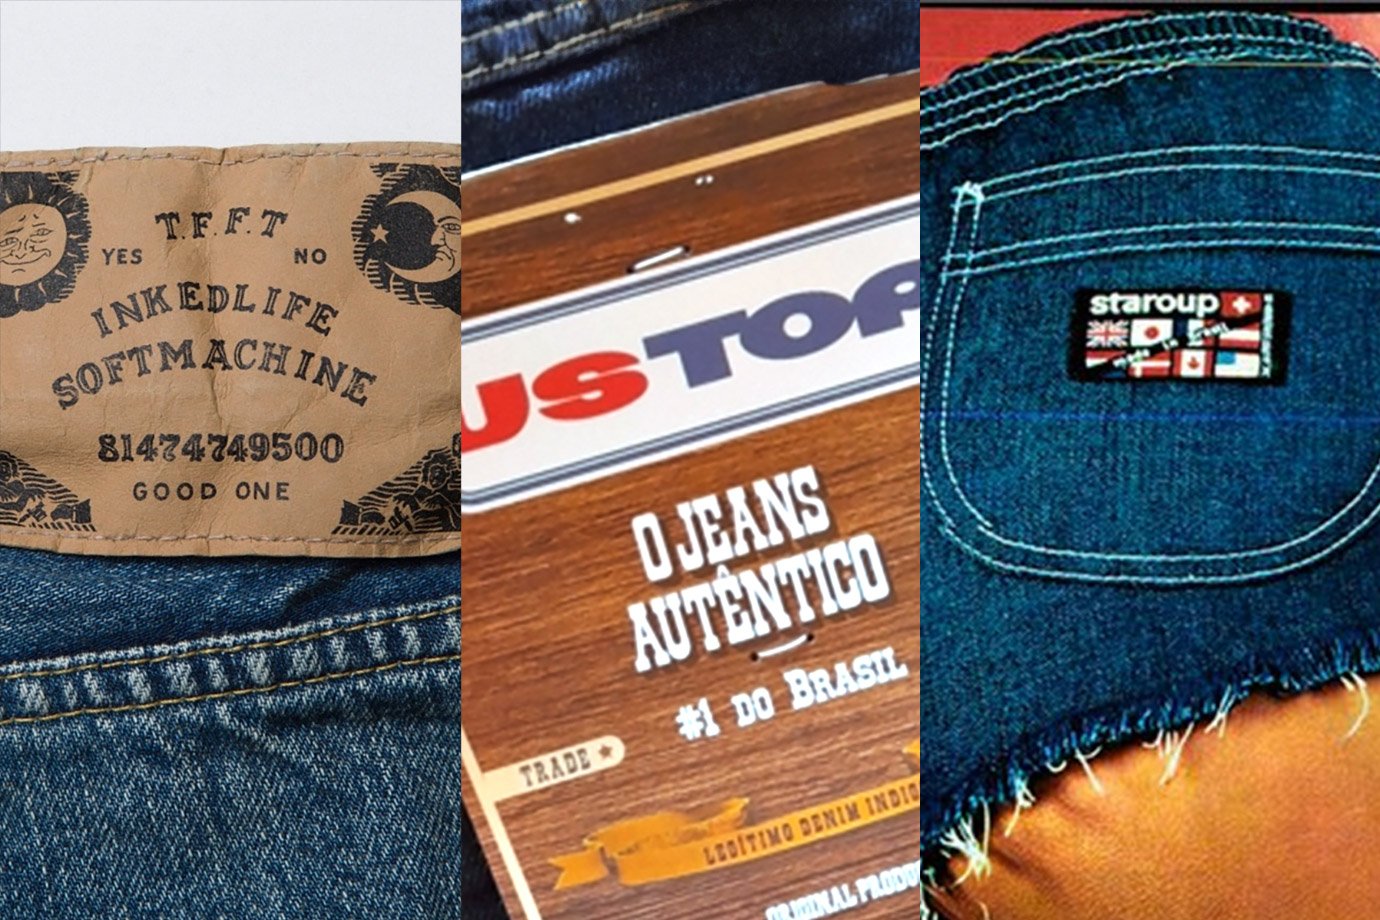 US Top, Soft Machine e Staroup: o que aconteceu com esses famosos jeans